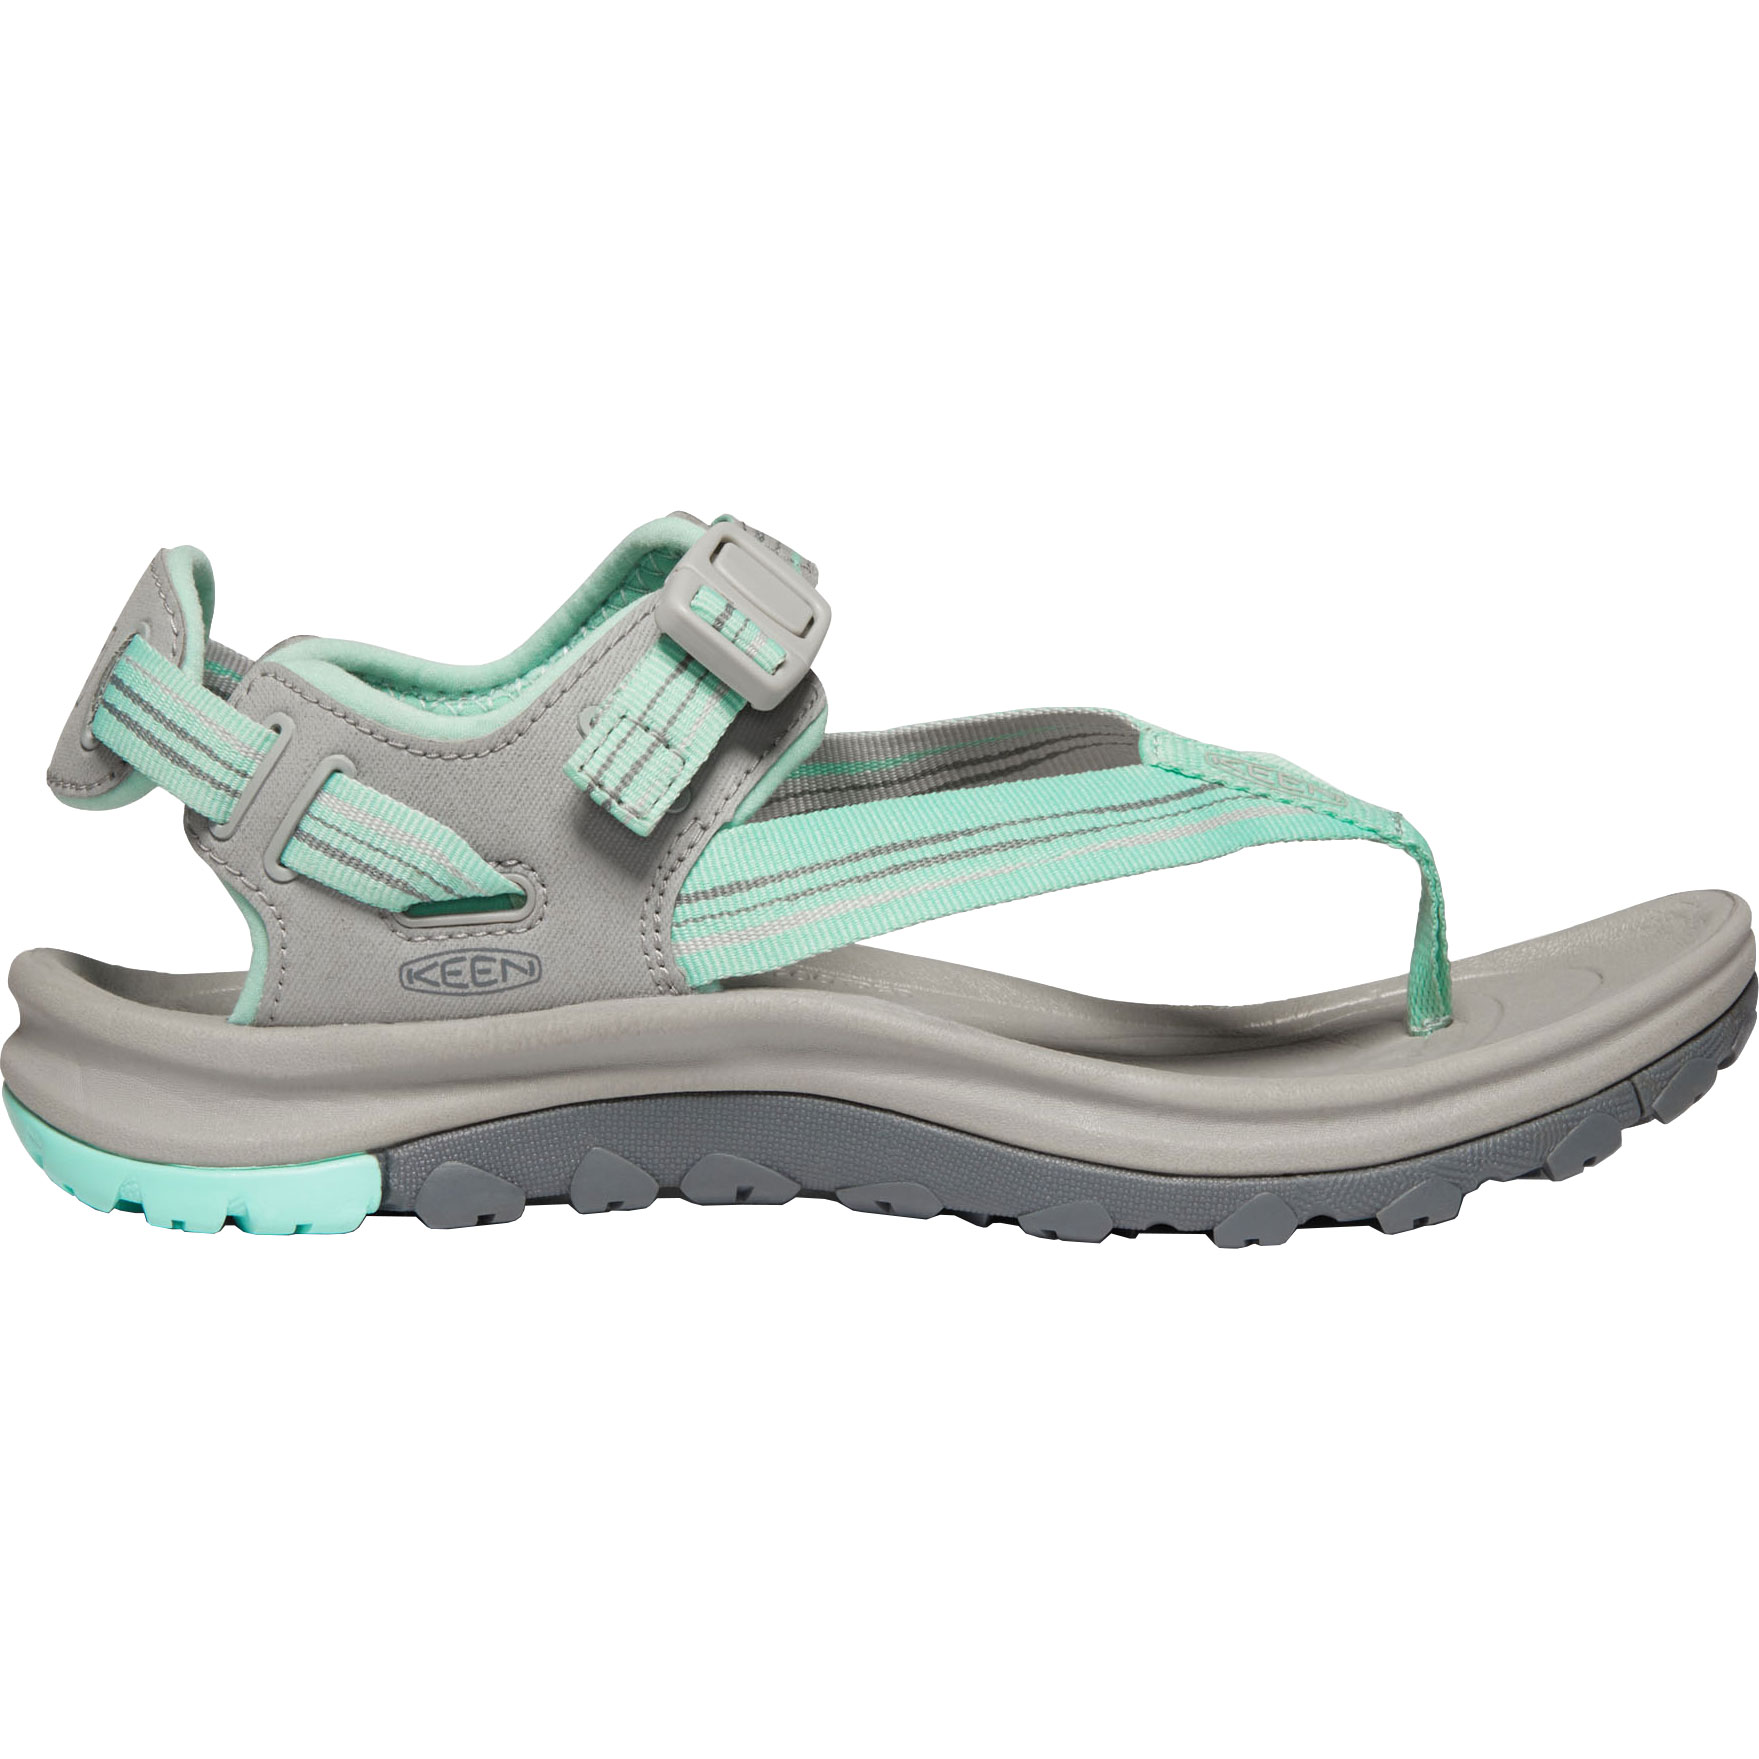 Picture of KEEN Terradora II Toe Post Sandals Women - Light Gray / Ocean Wave